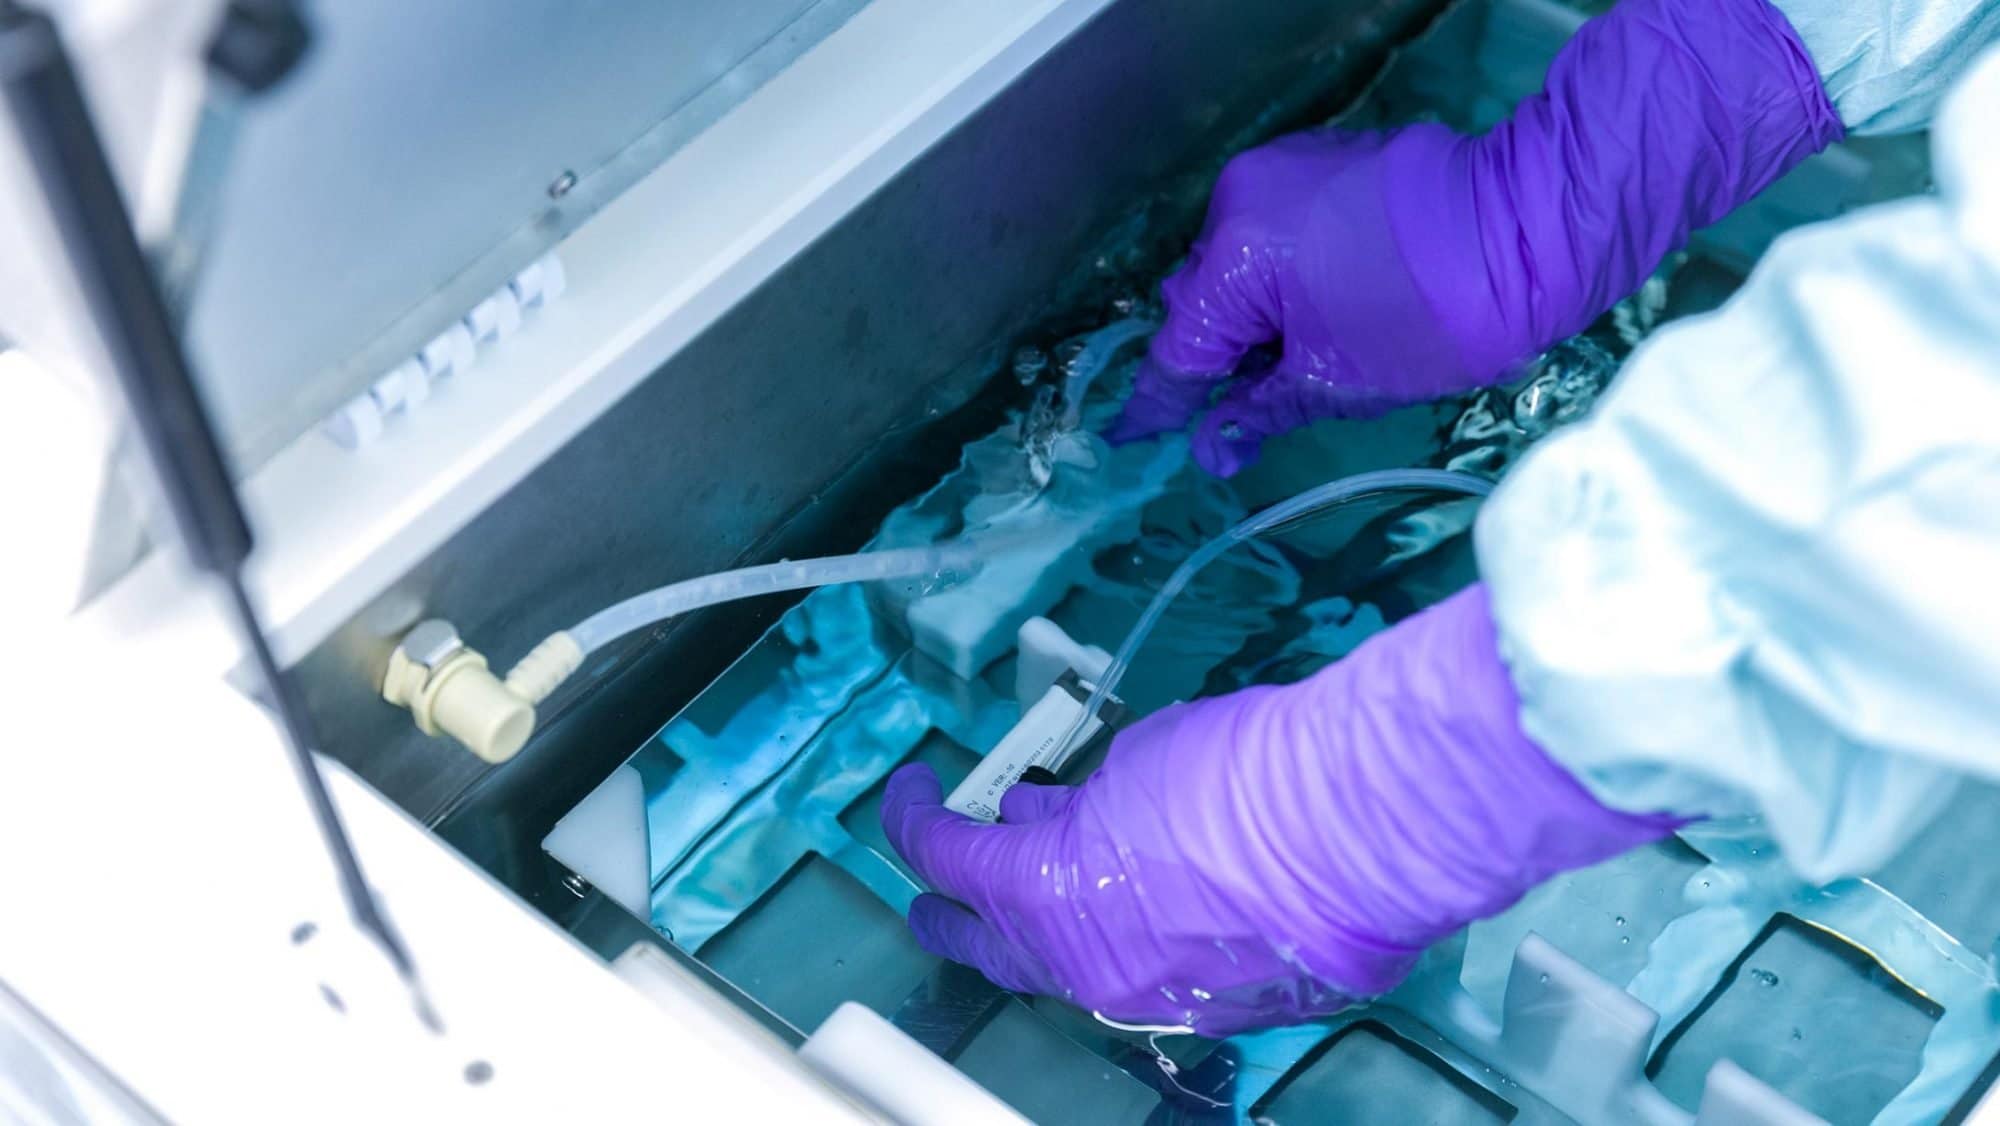 Die Sterilisationsassistentin legt die Instrumente in einen mit Wasser gefüllten Behälter.